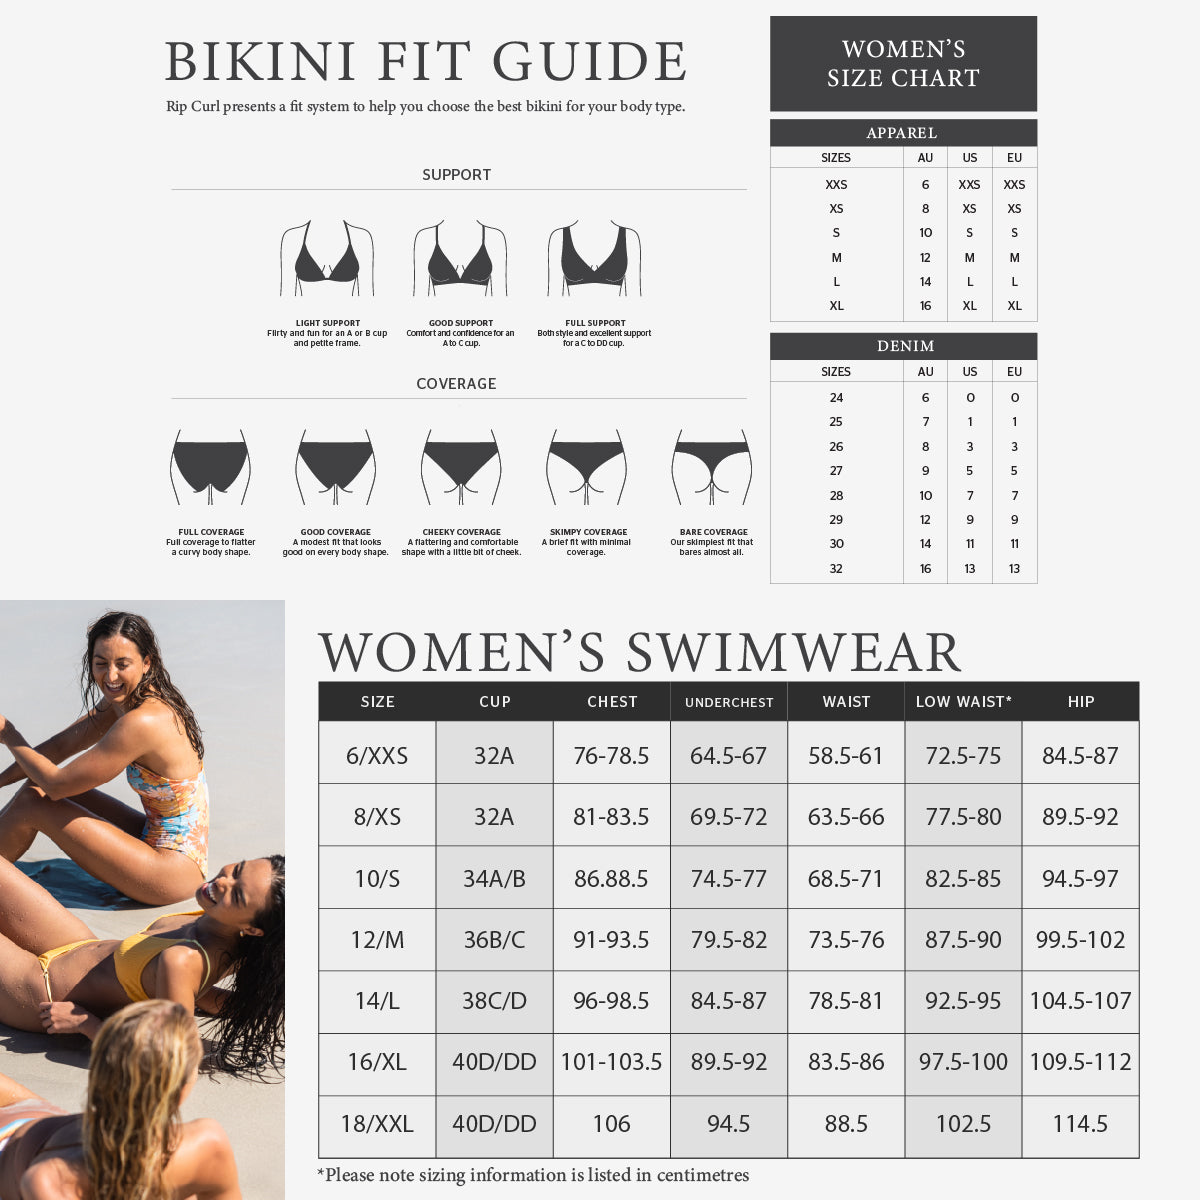 Swimwear Size Guide